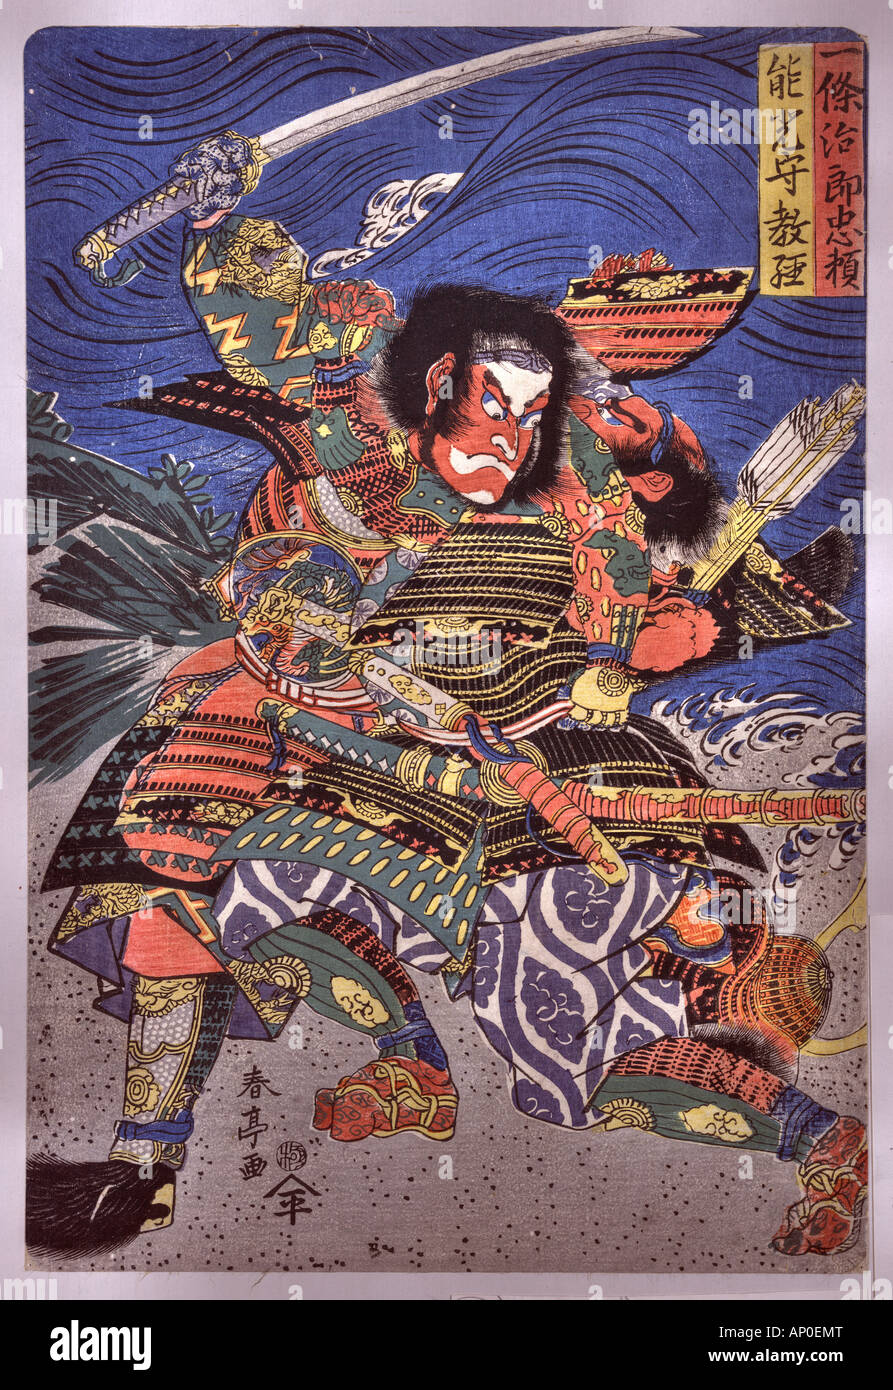 The samurai warriors Ichijo Jiro Tadanori and Notonokami Noritsune. Japan between 1818 and 1820 Stock Photo